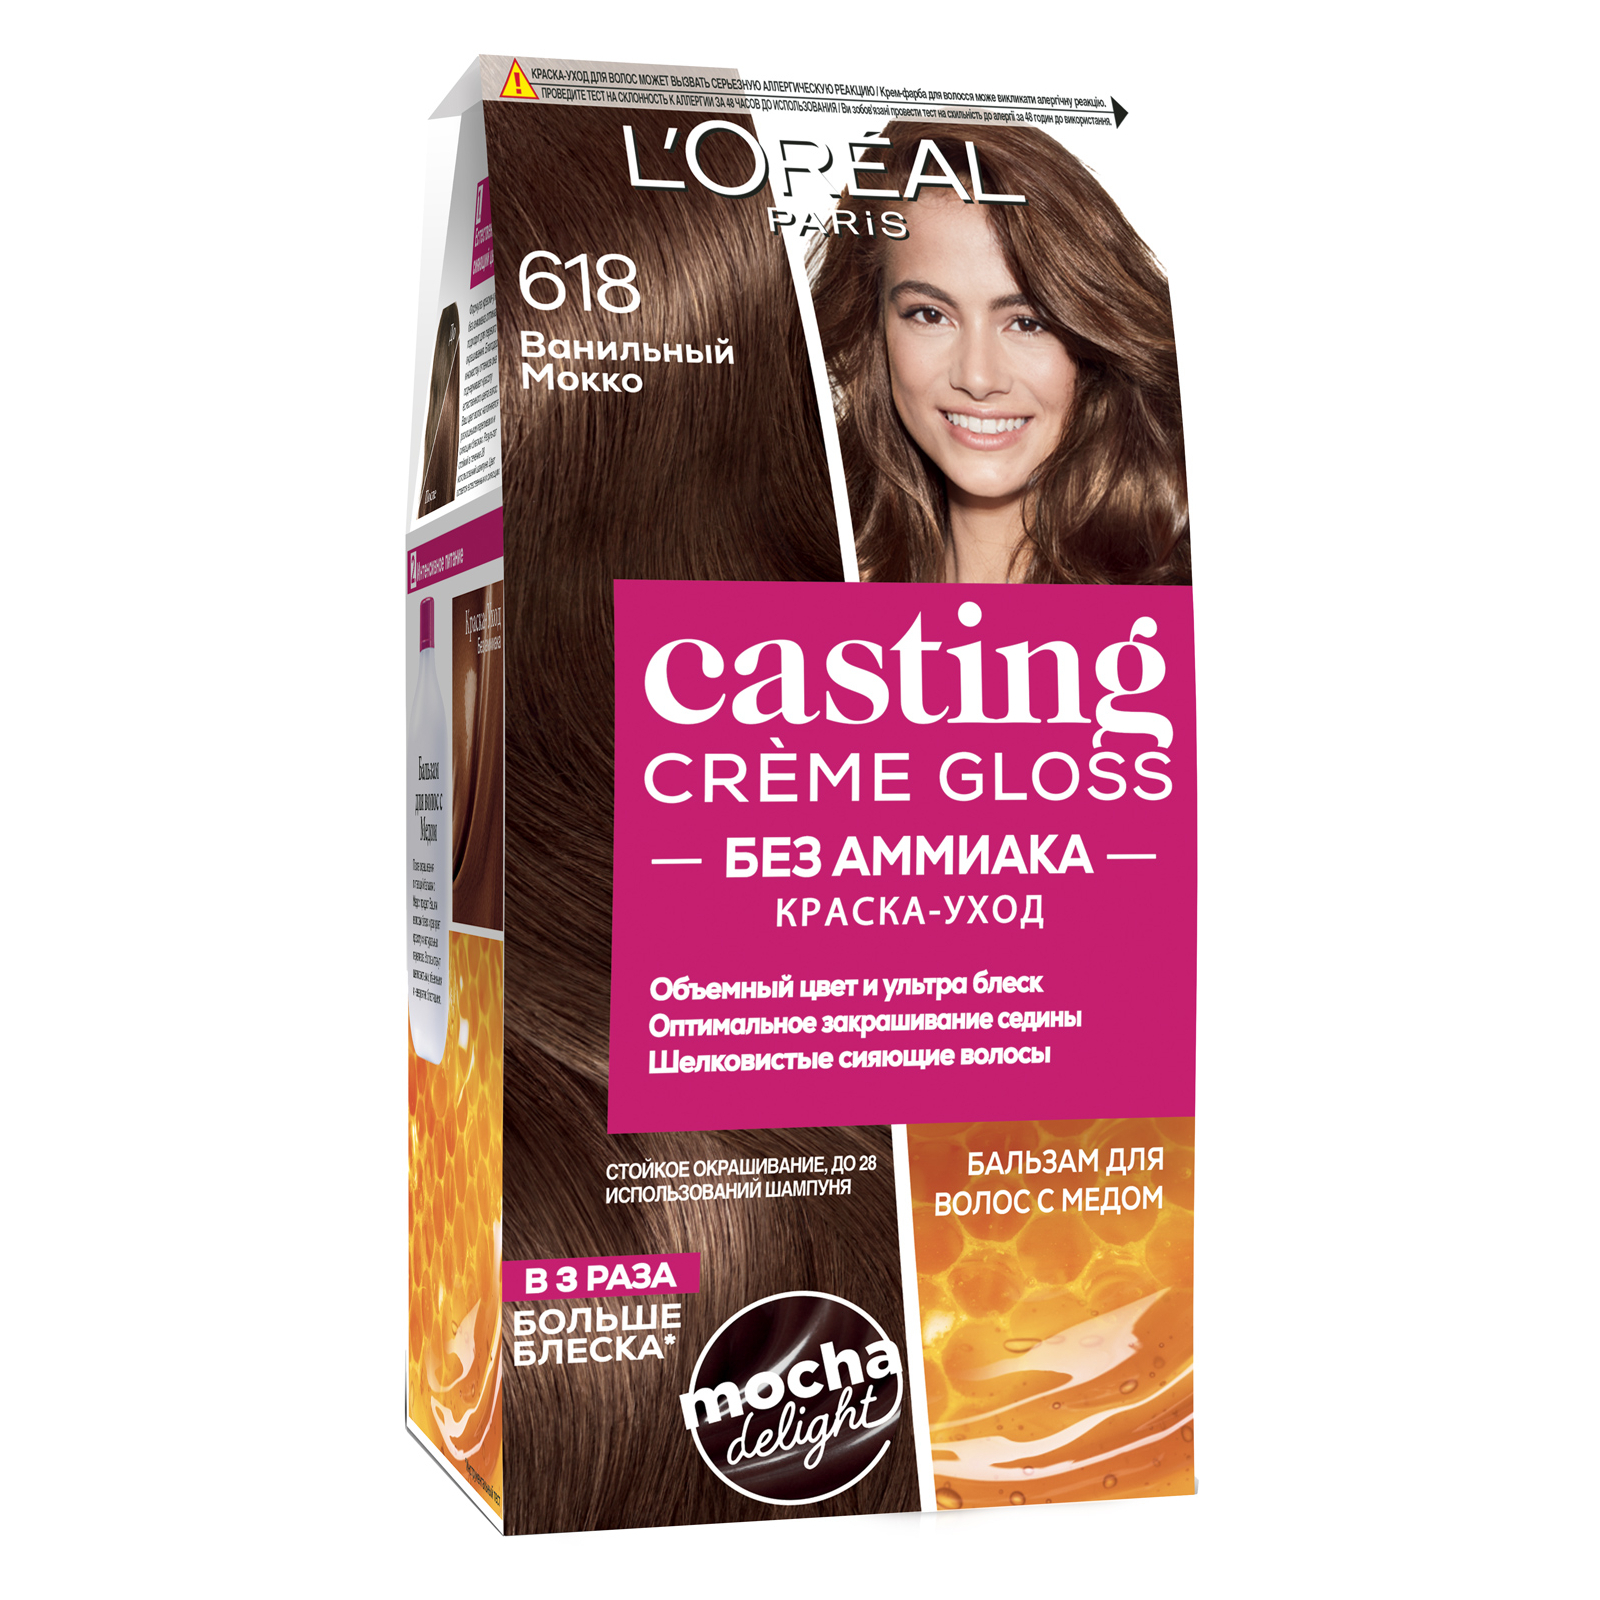 Краска для волос L'Oreal Paris Casting Creme Gloss 618 - Ванильный Мокко 120 мл (3600523979882)